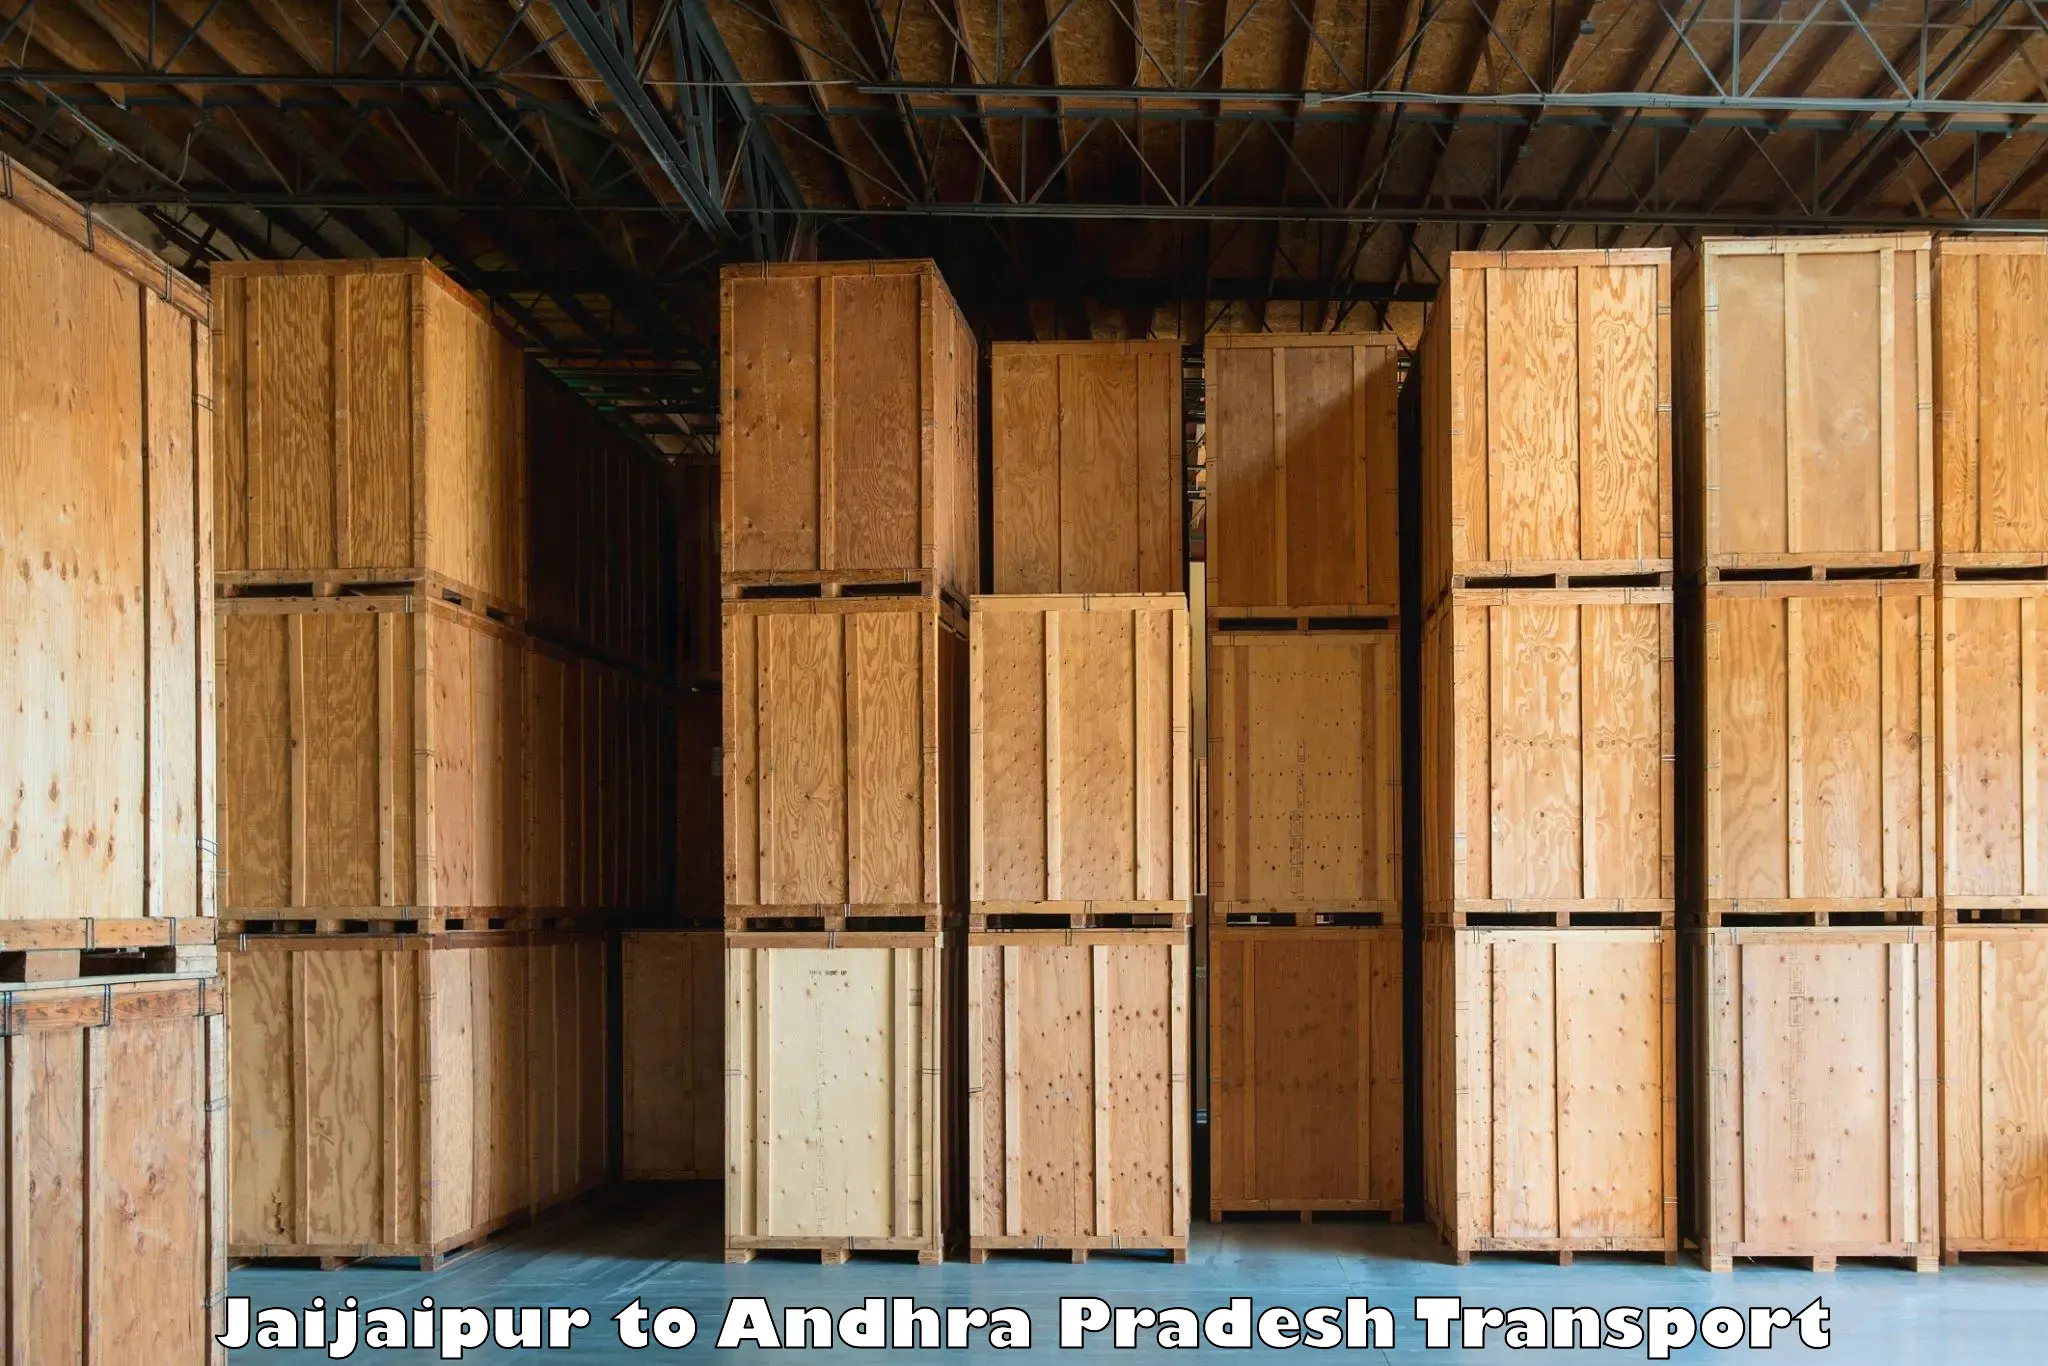 Luggage transport services in Jaijaipur to Andhra Pradesh